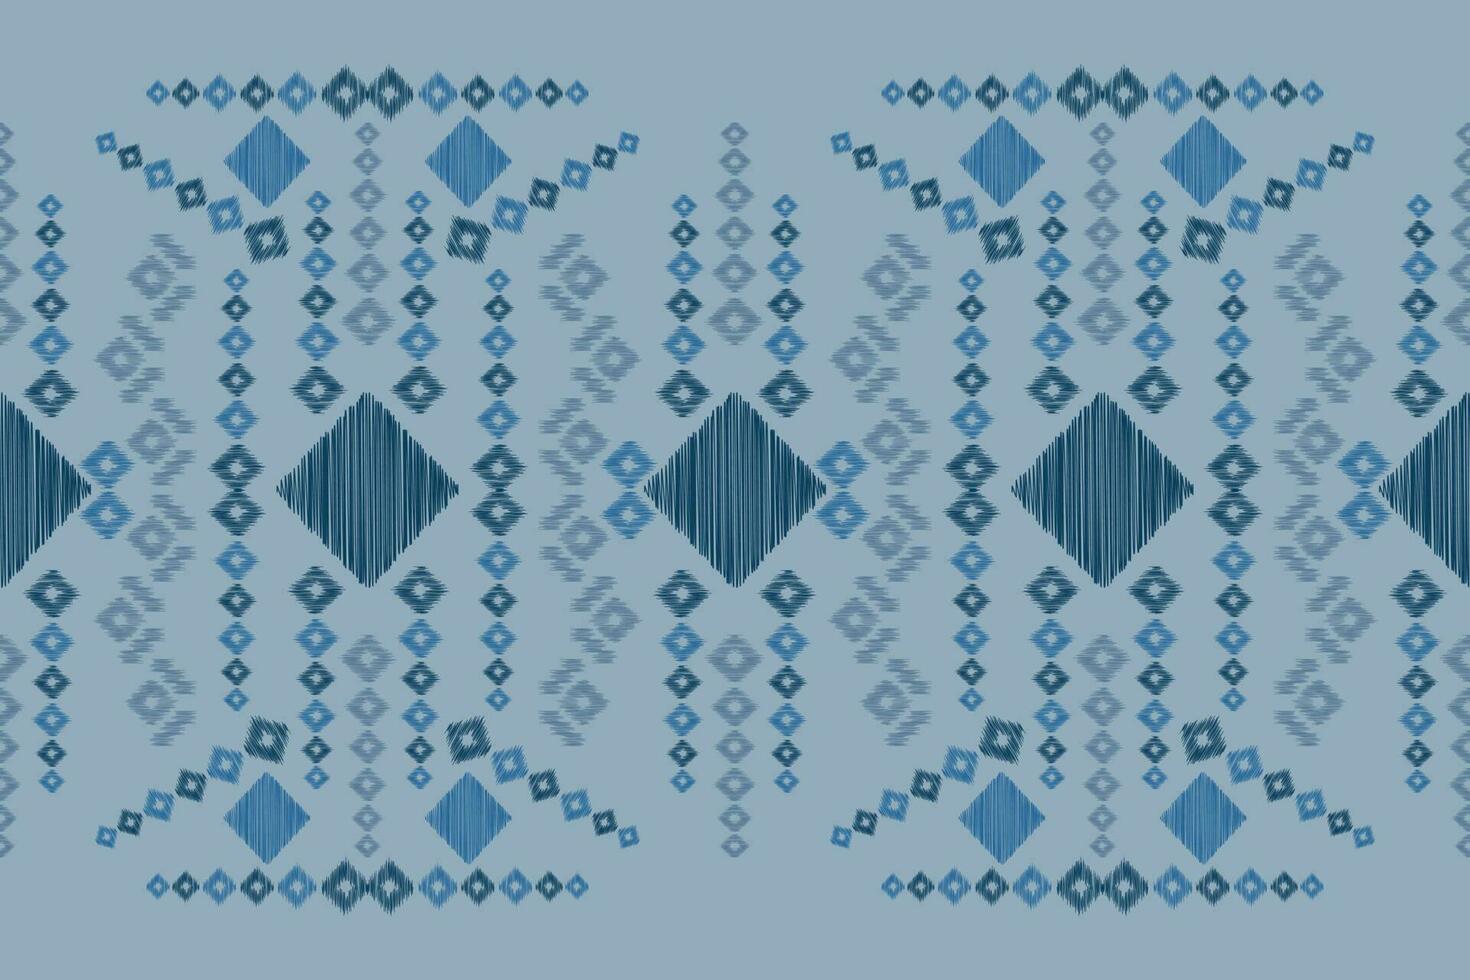 etnisk ikat tyg mönster geometrisk stil.afrikansk ikat broderi etnisk orientalisk mönster Marin blå bakgrund. abstrakt, vektor, illustration.för textur, kläder, scarf, dekoration, matta, siden. vektor